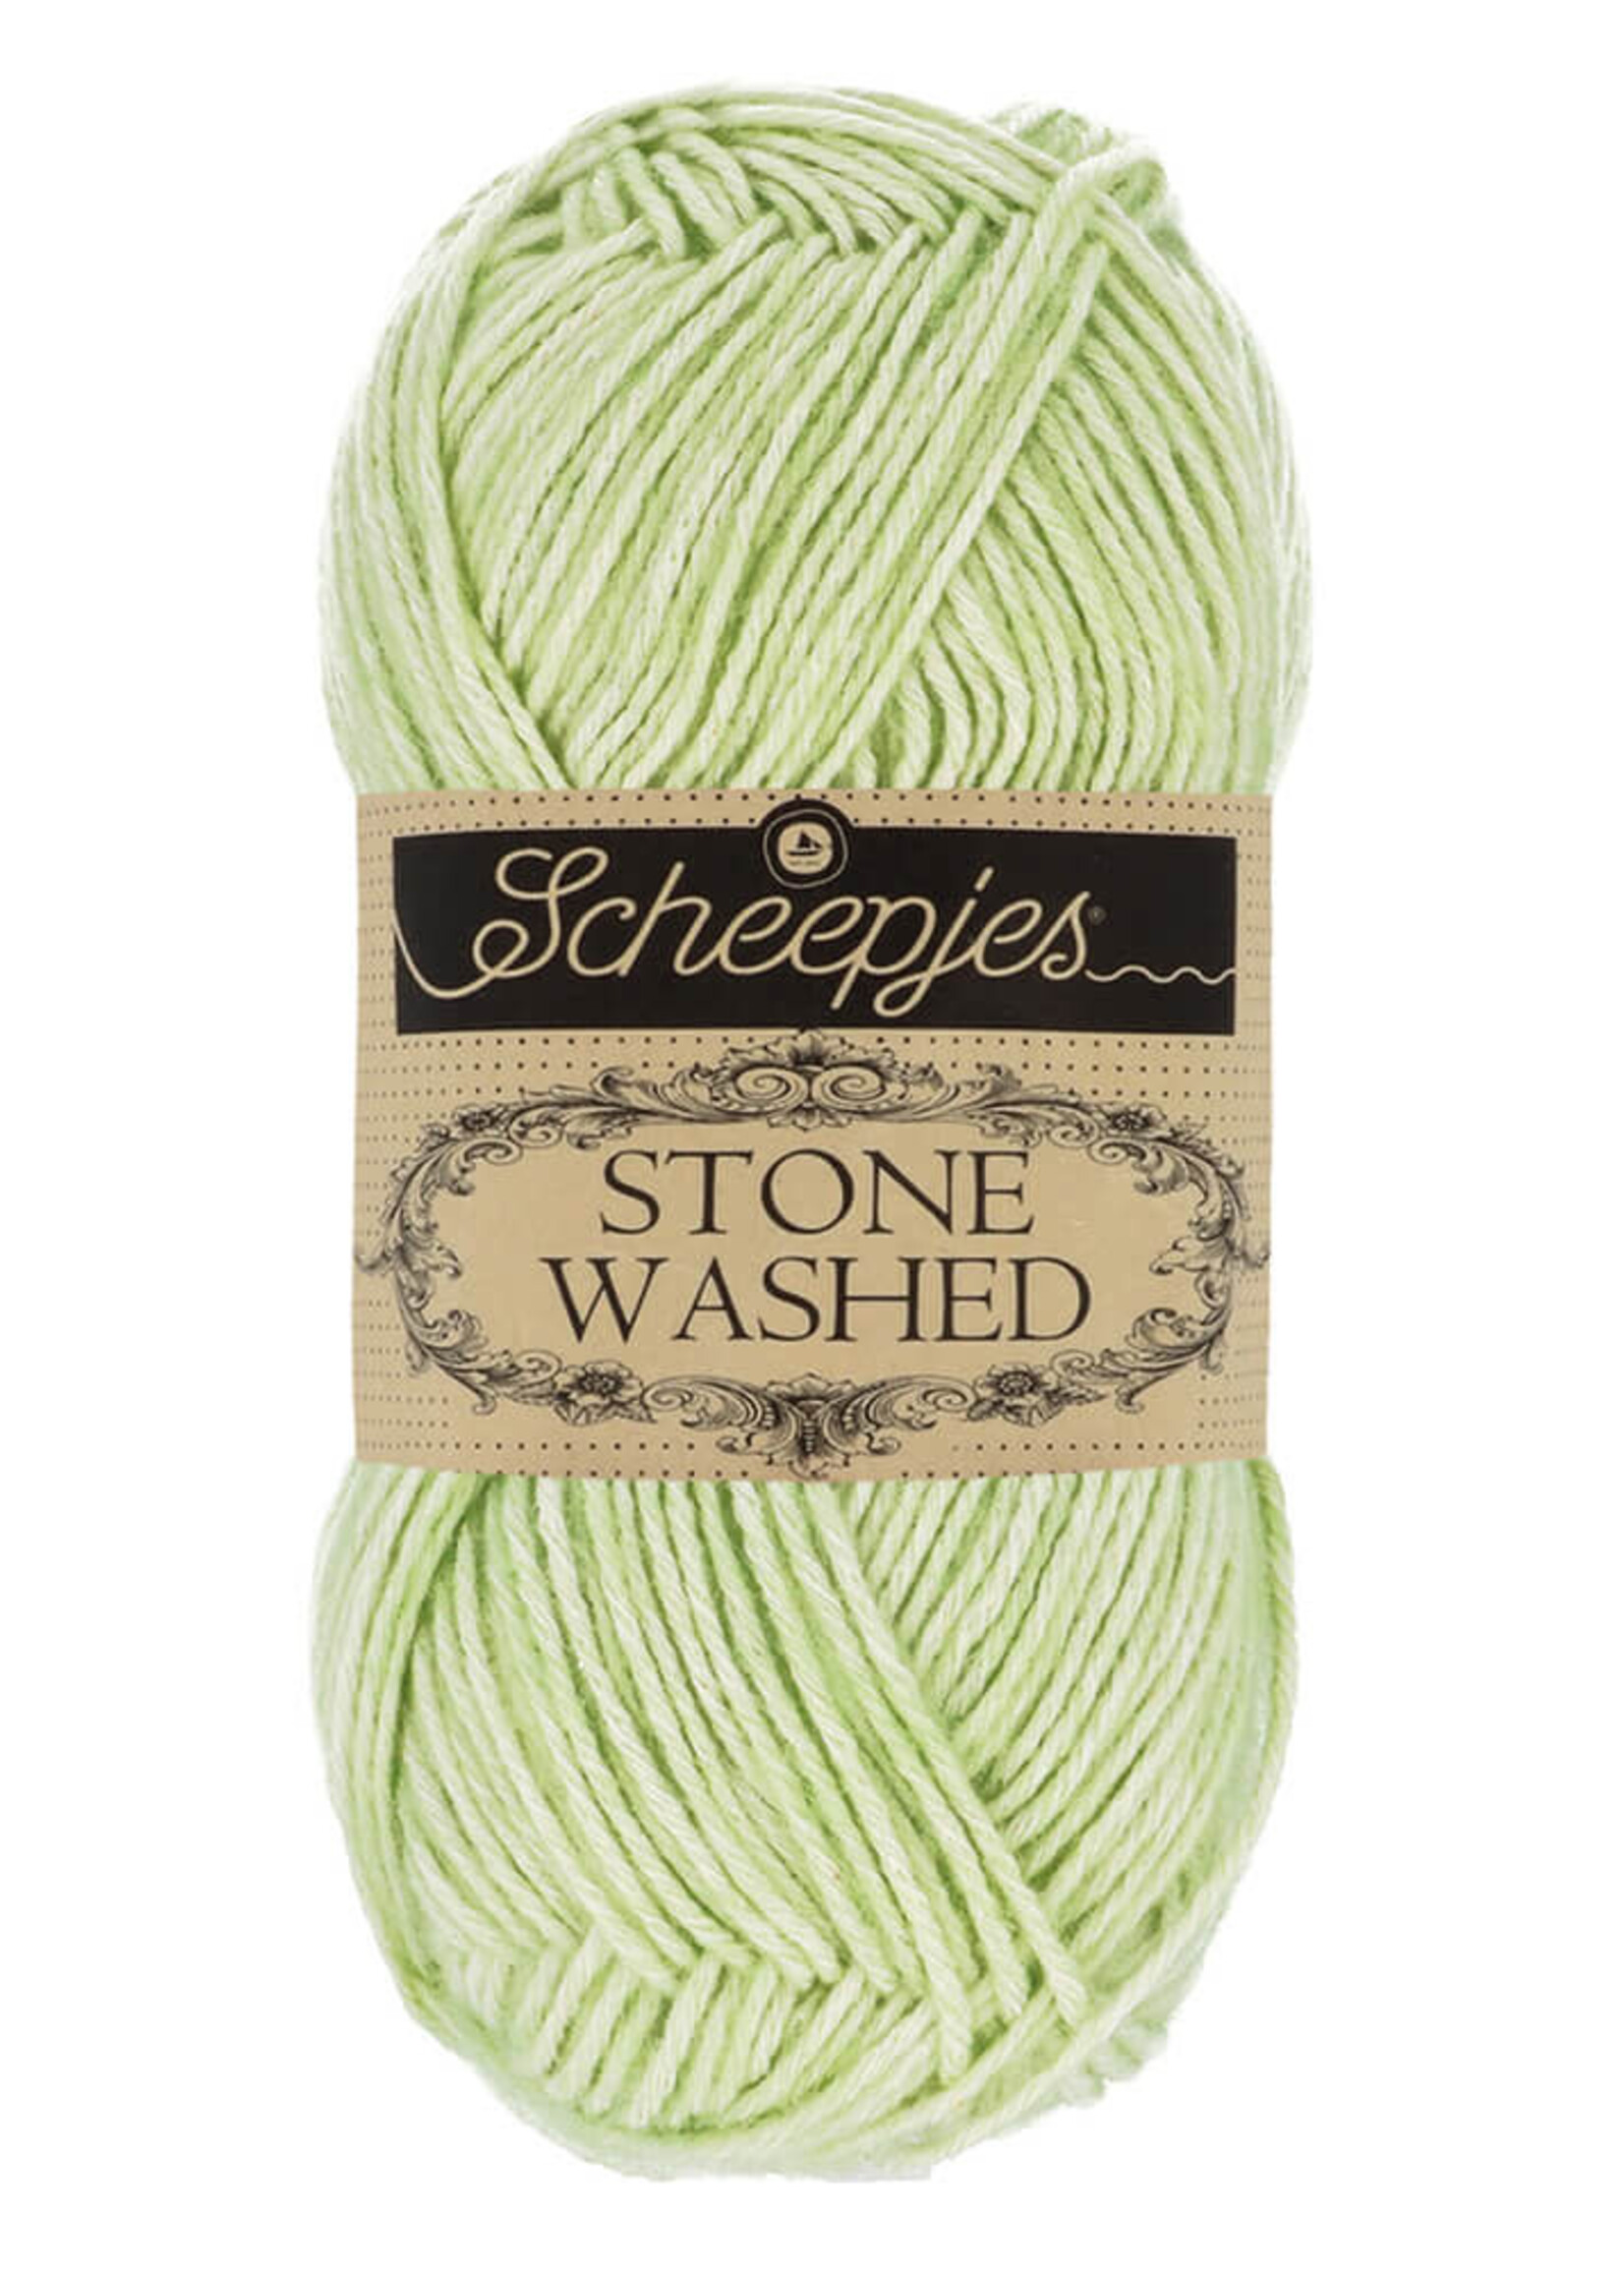 Scheepjes Stone Washed - Scheepjes -819 New Jade